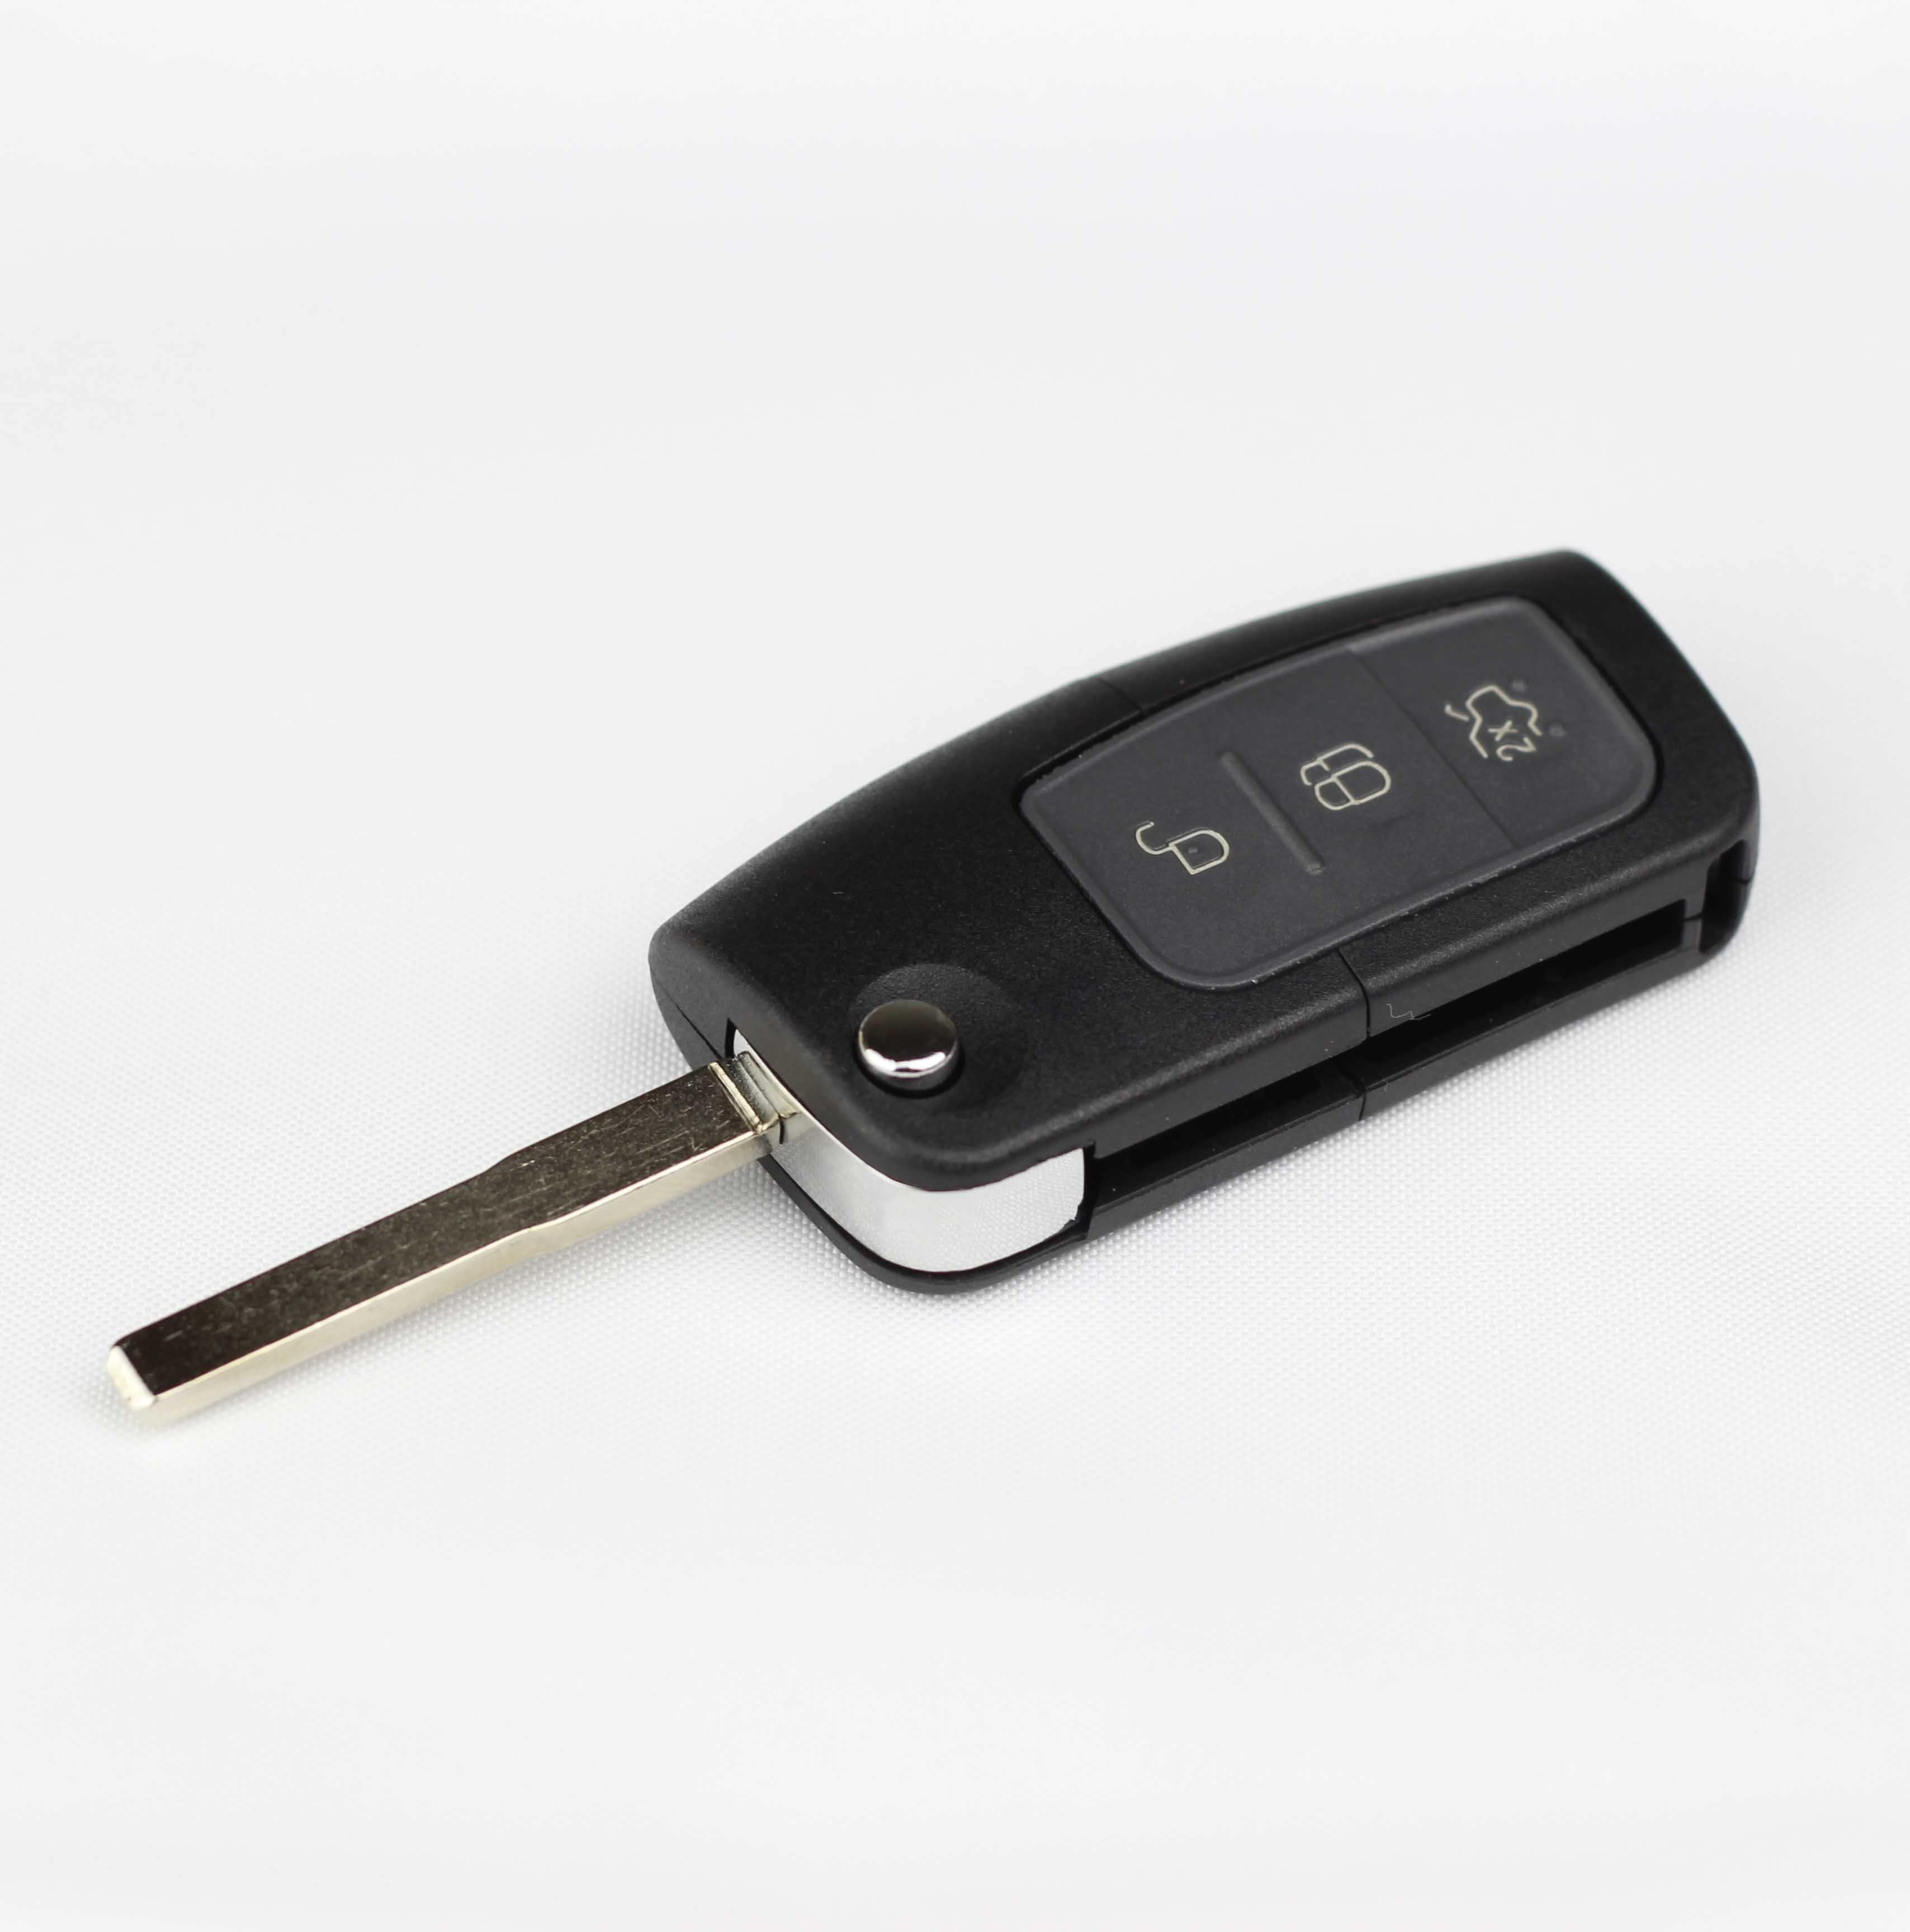 Fekete színű, 3 gombos Ford kulcs, bicskakulcs HU101 kulcsszárral.